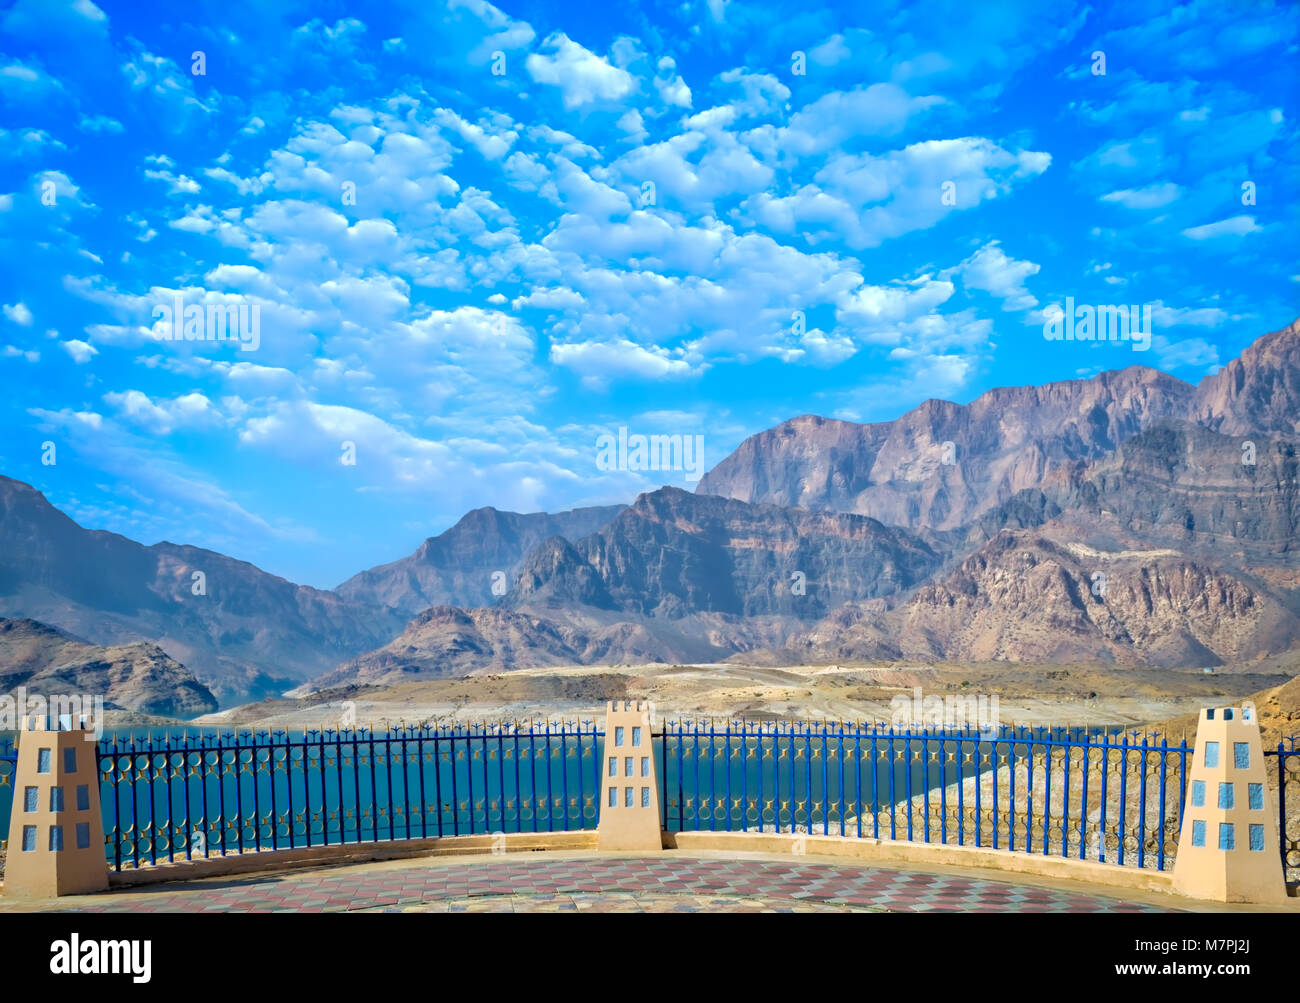 Aussichtspunkt im Garten die weite Landschaft der Berge, Wasser und einem klaren, blauen Himmel zu sehen. Stockfoto